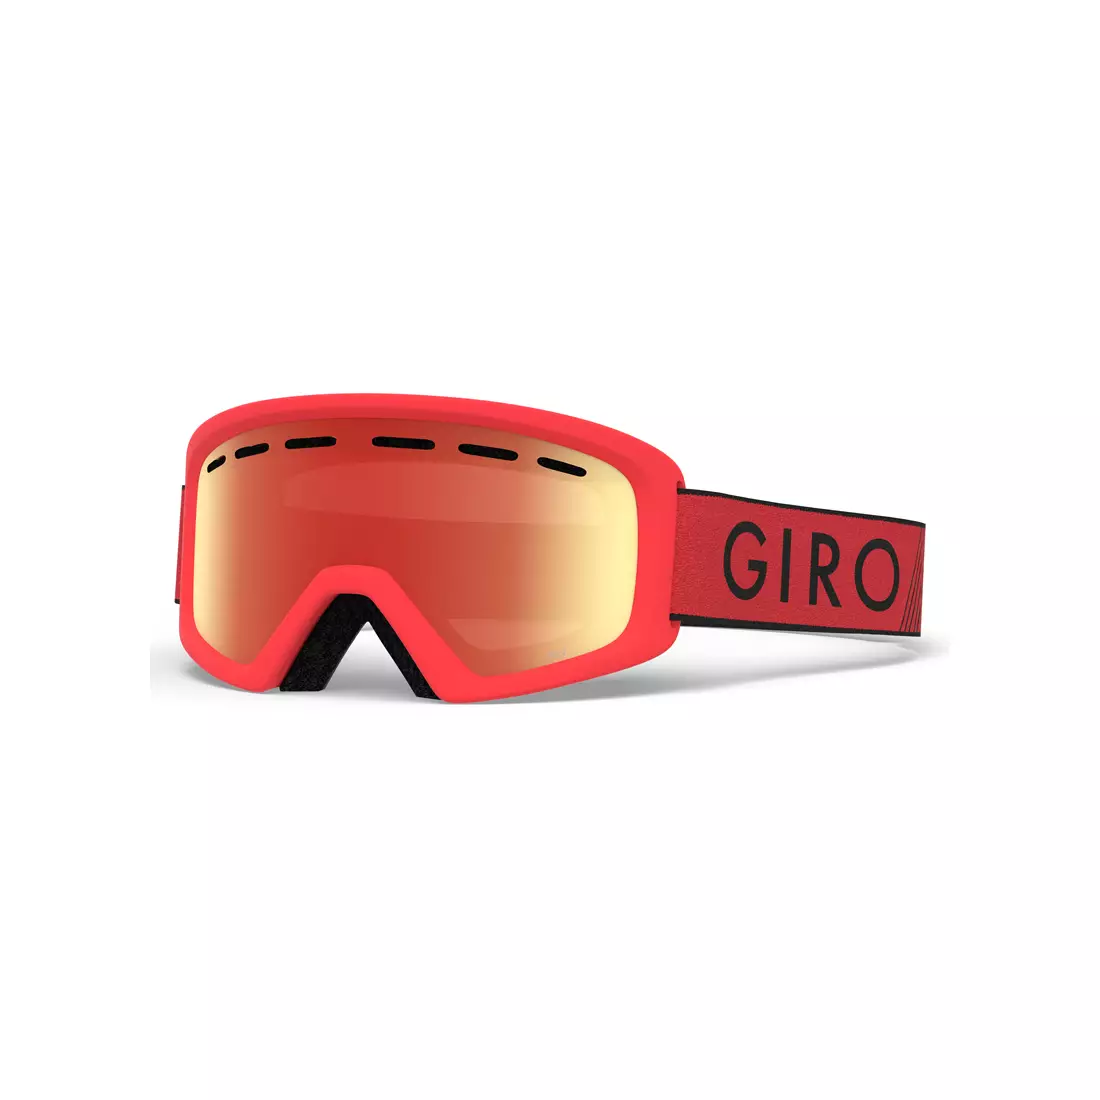 Ochelari de schi / snowboard junior REV RED BLACK ZOOM GR-7094700